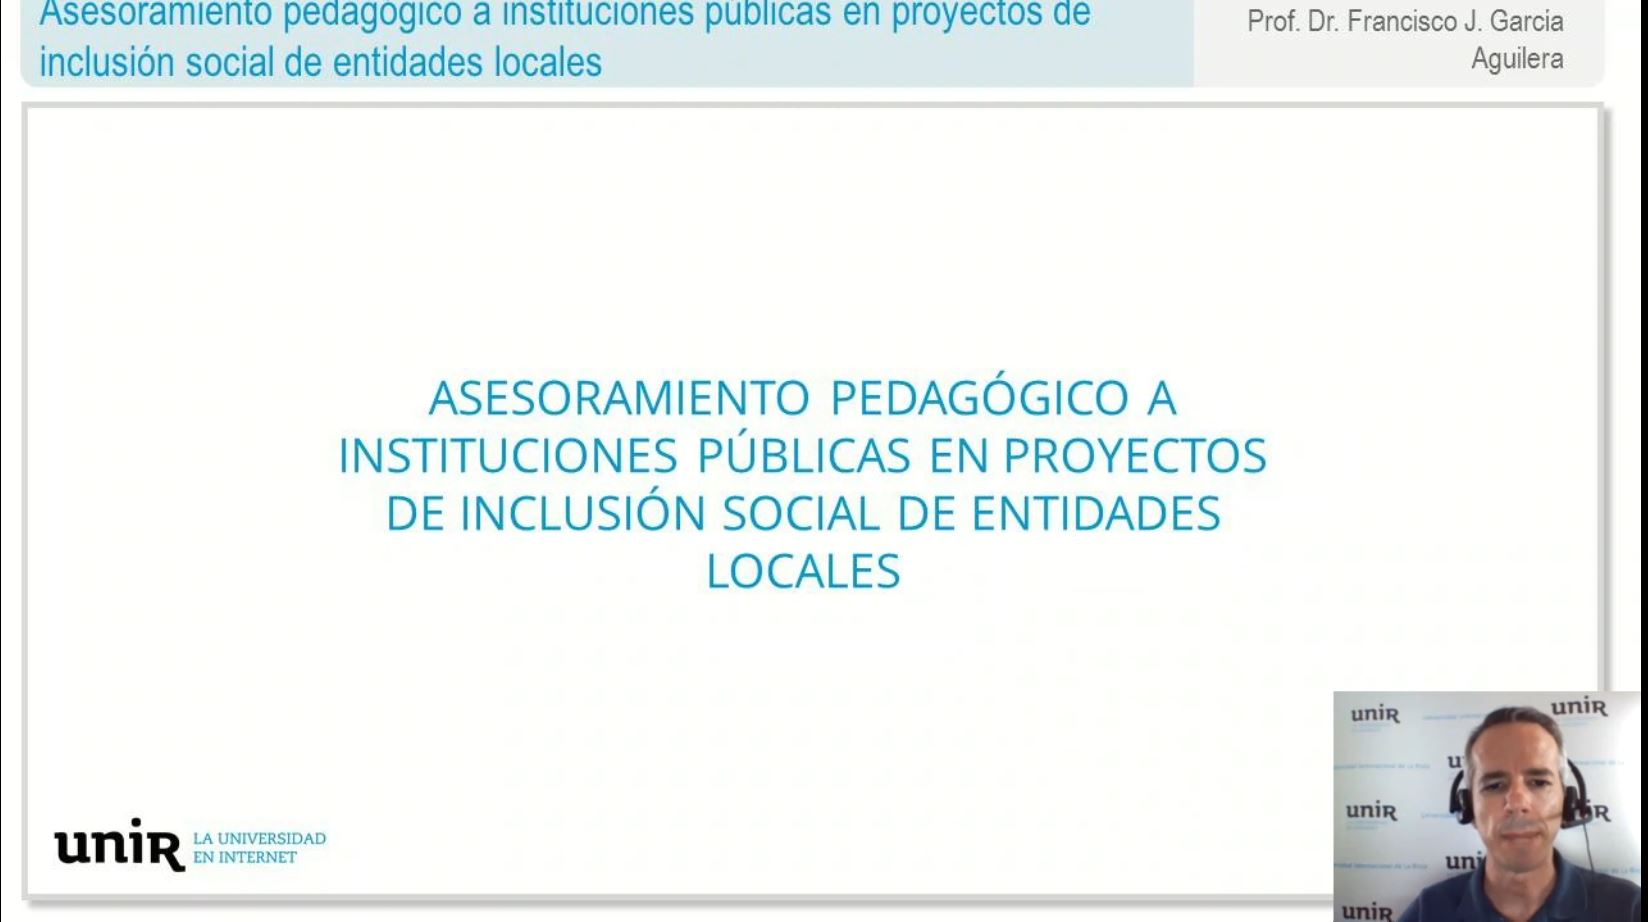 Asesoramiento-pedagogico-a-instituciones-publicas-en-proyectos-de-inclusion-social-de-entidades-locales